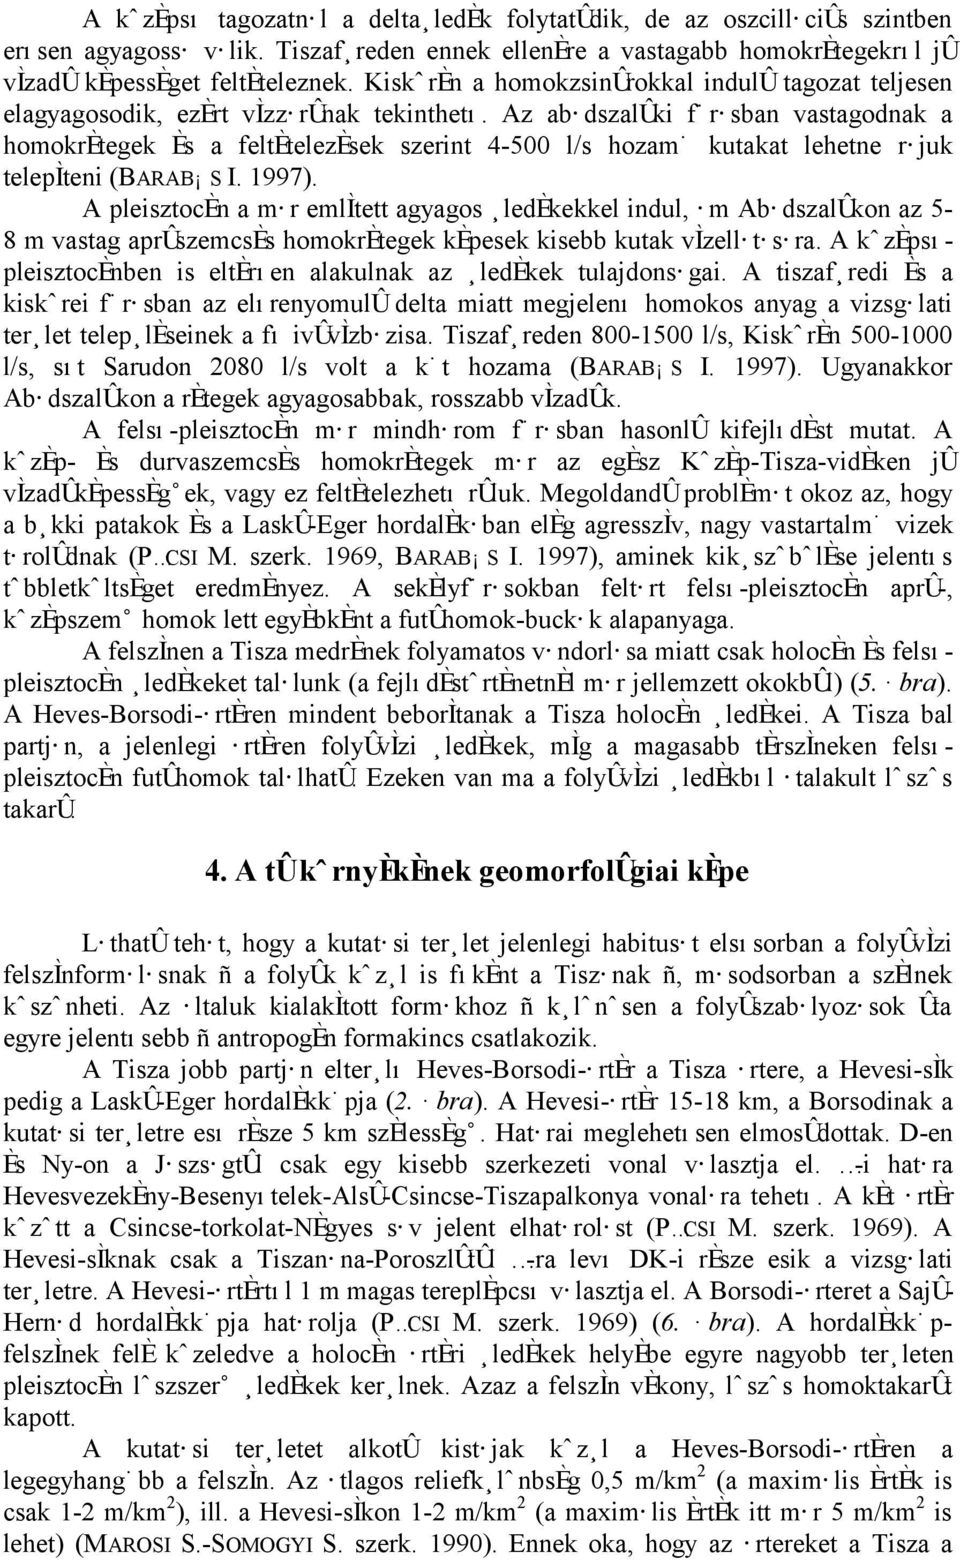 Az abædszal ki fœræsban vastagodnak a homokrøtegek Øs a feltøtelezøsek szerint 4-500 l/s hozamœ kutakat lehetne ræjuk telep teni (BARAB`S I. 1997).